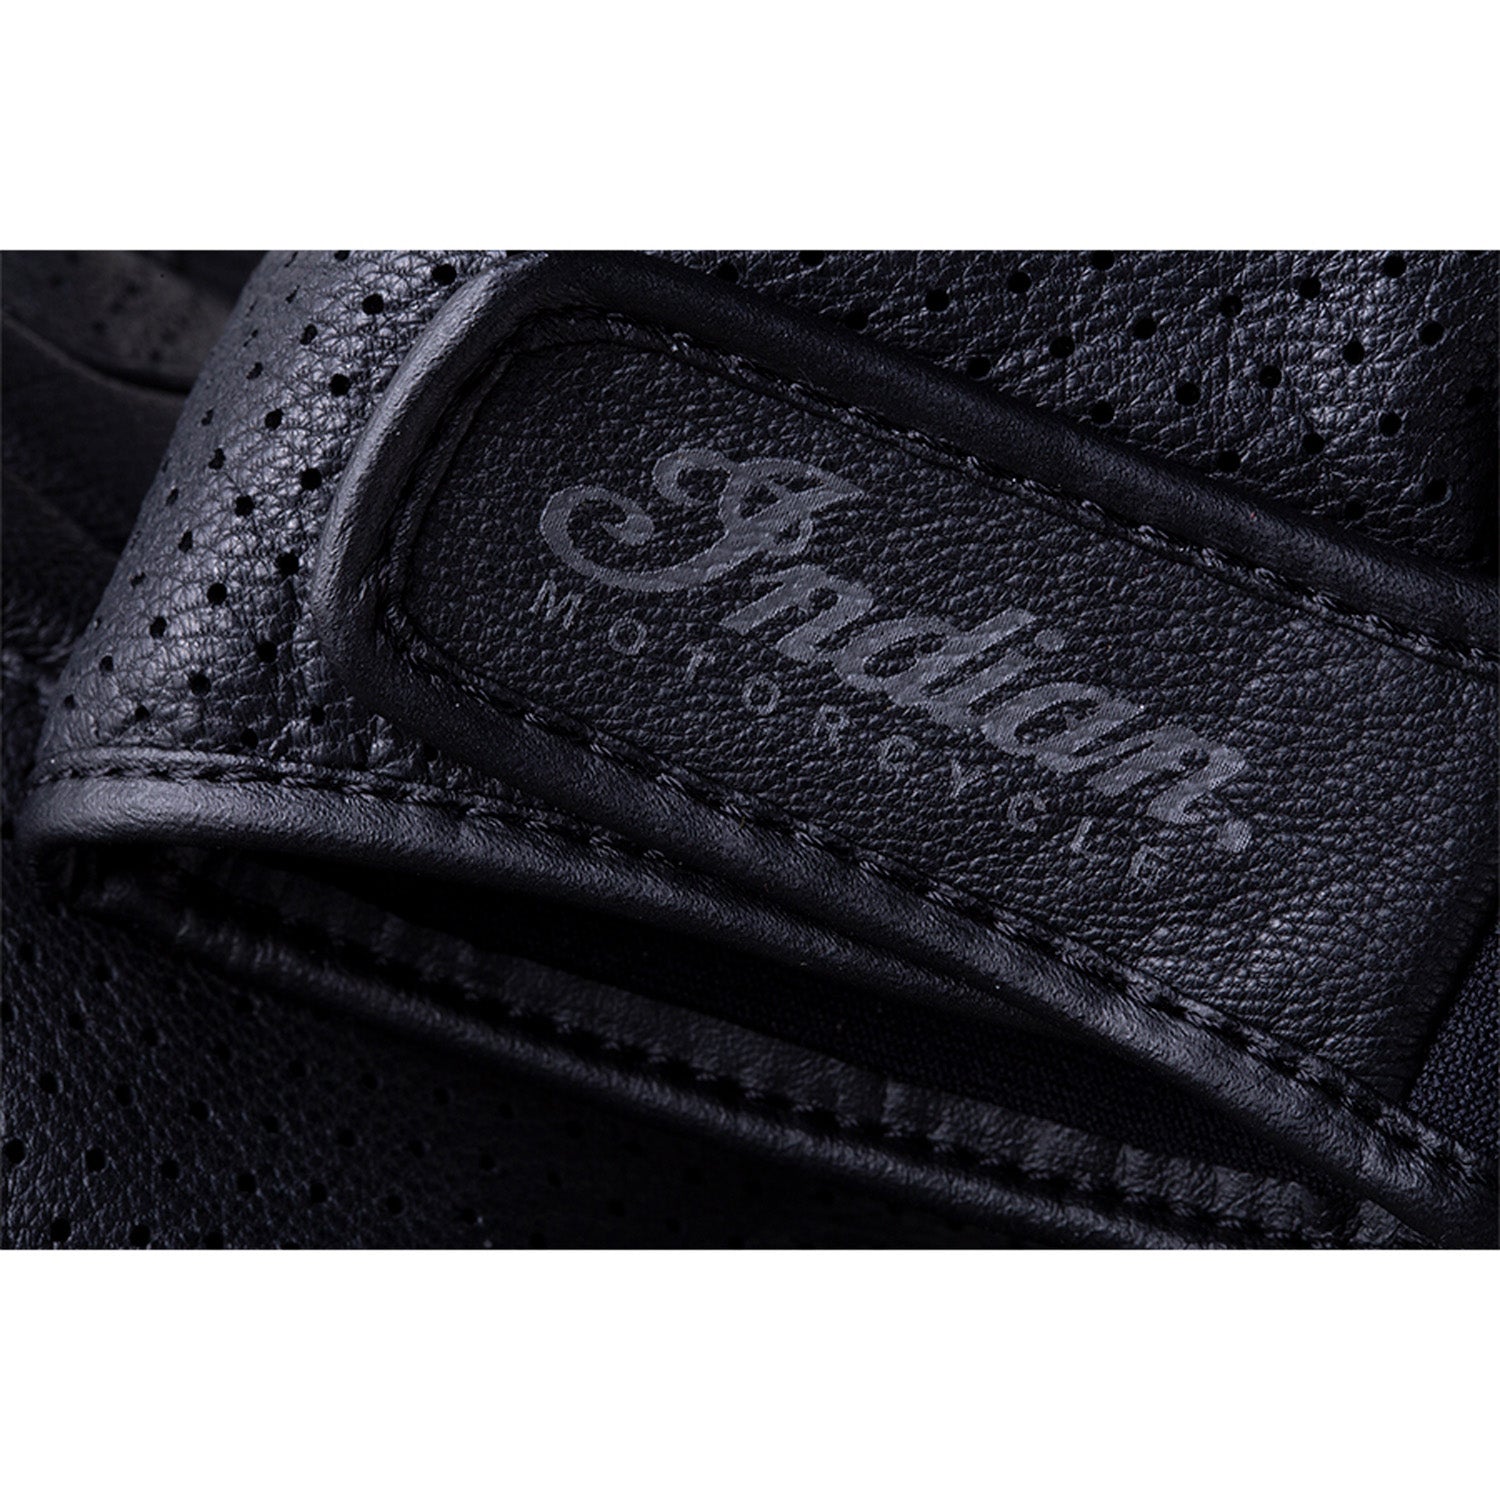 Men's Leather Fingerless Denton Glove, Black